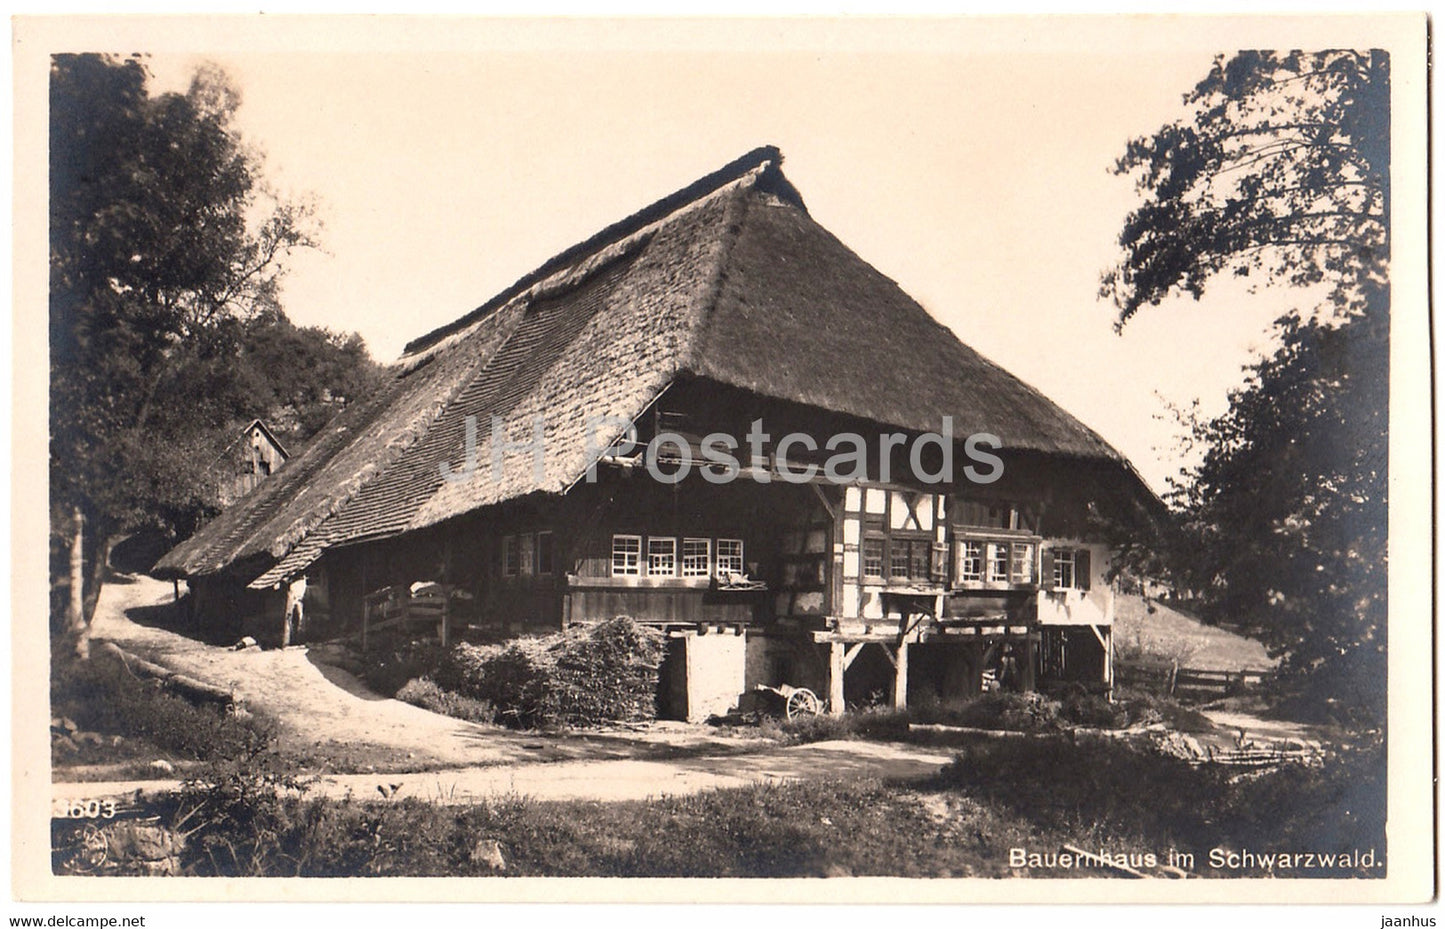 Bauernhaus im Schwarzwald - 3603 - old postcard - Germany - unused - JH Postcards